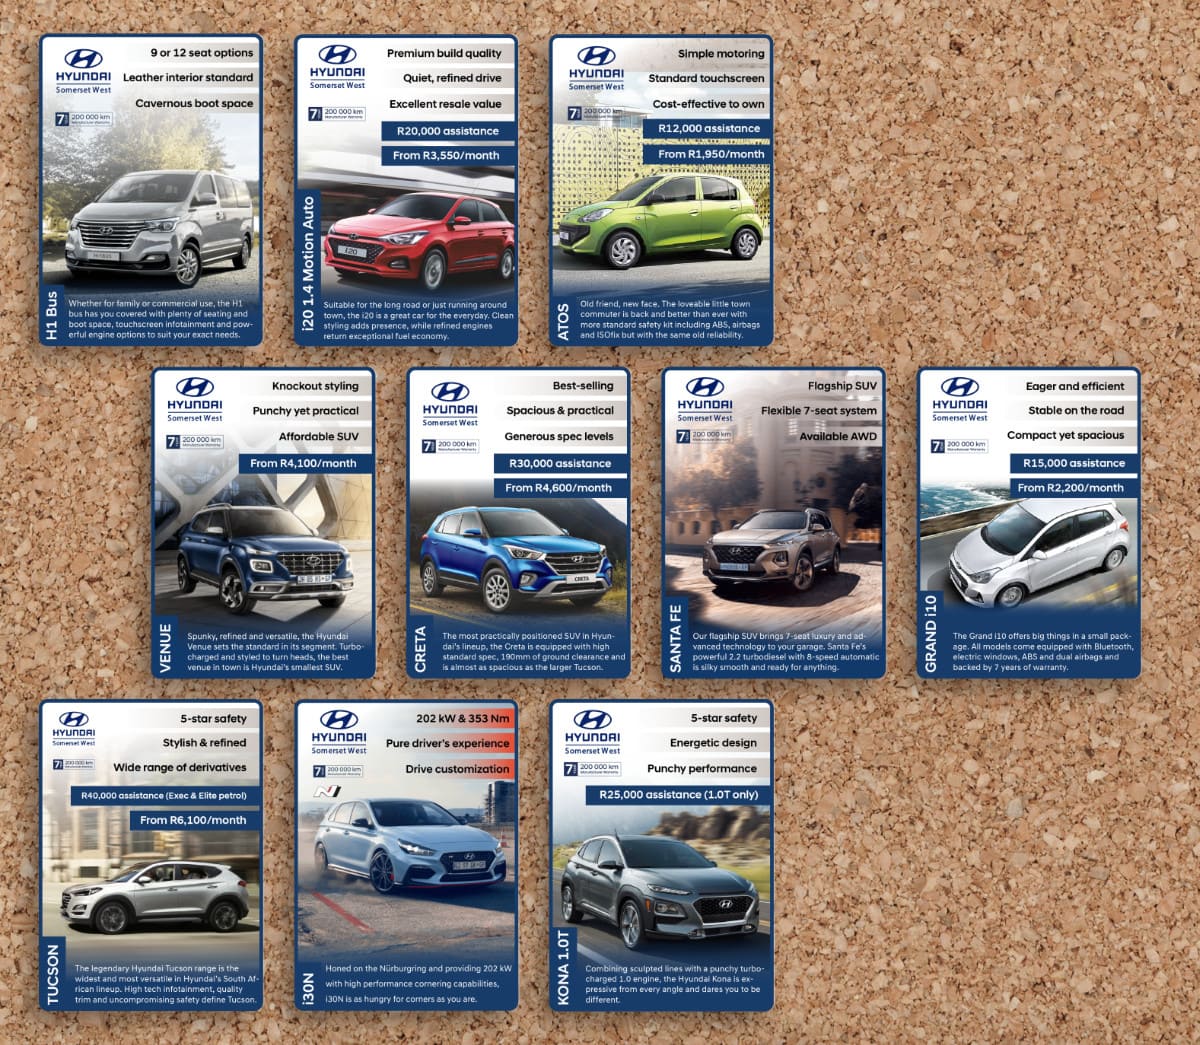 Mockup of digital playing card designs made for Hyundai vehicles